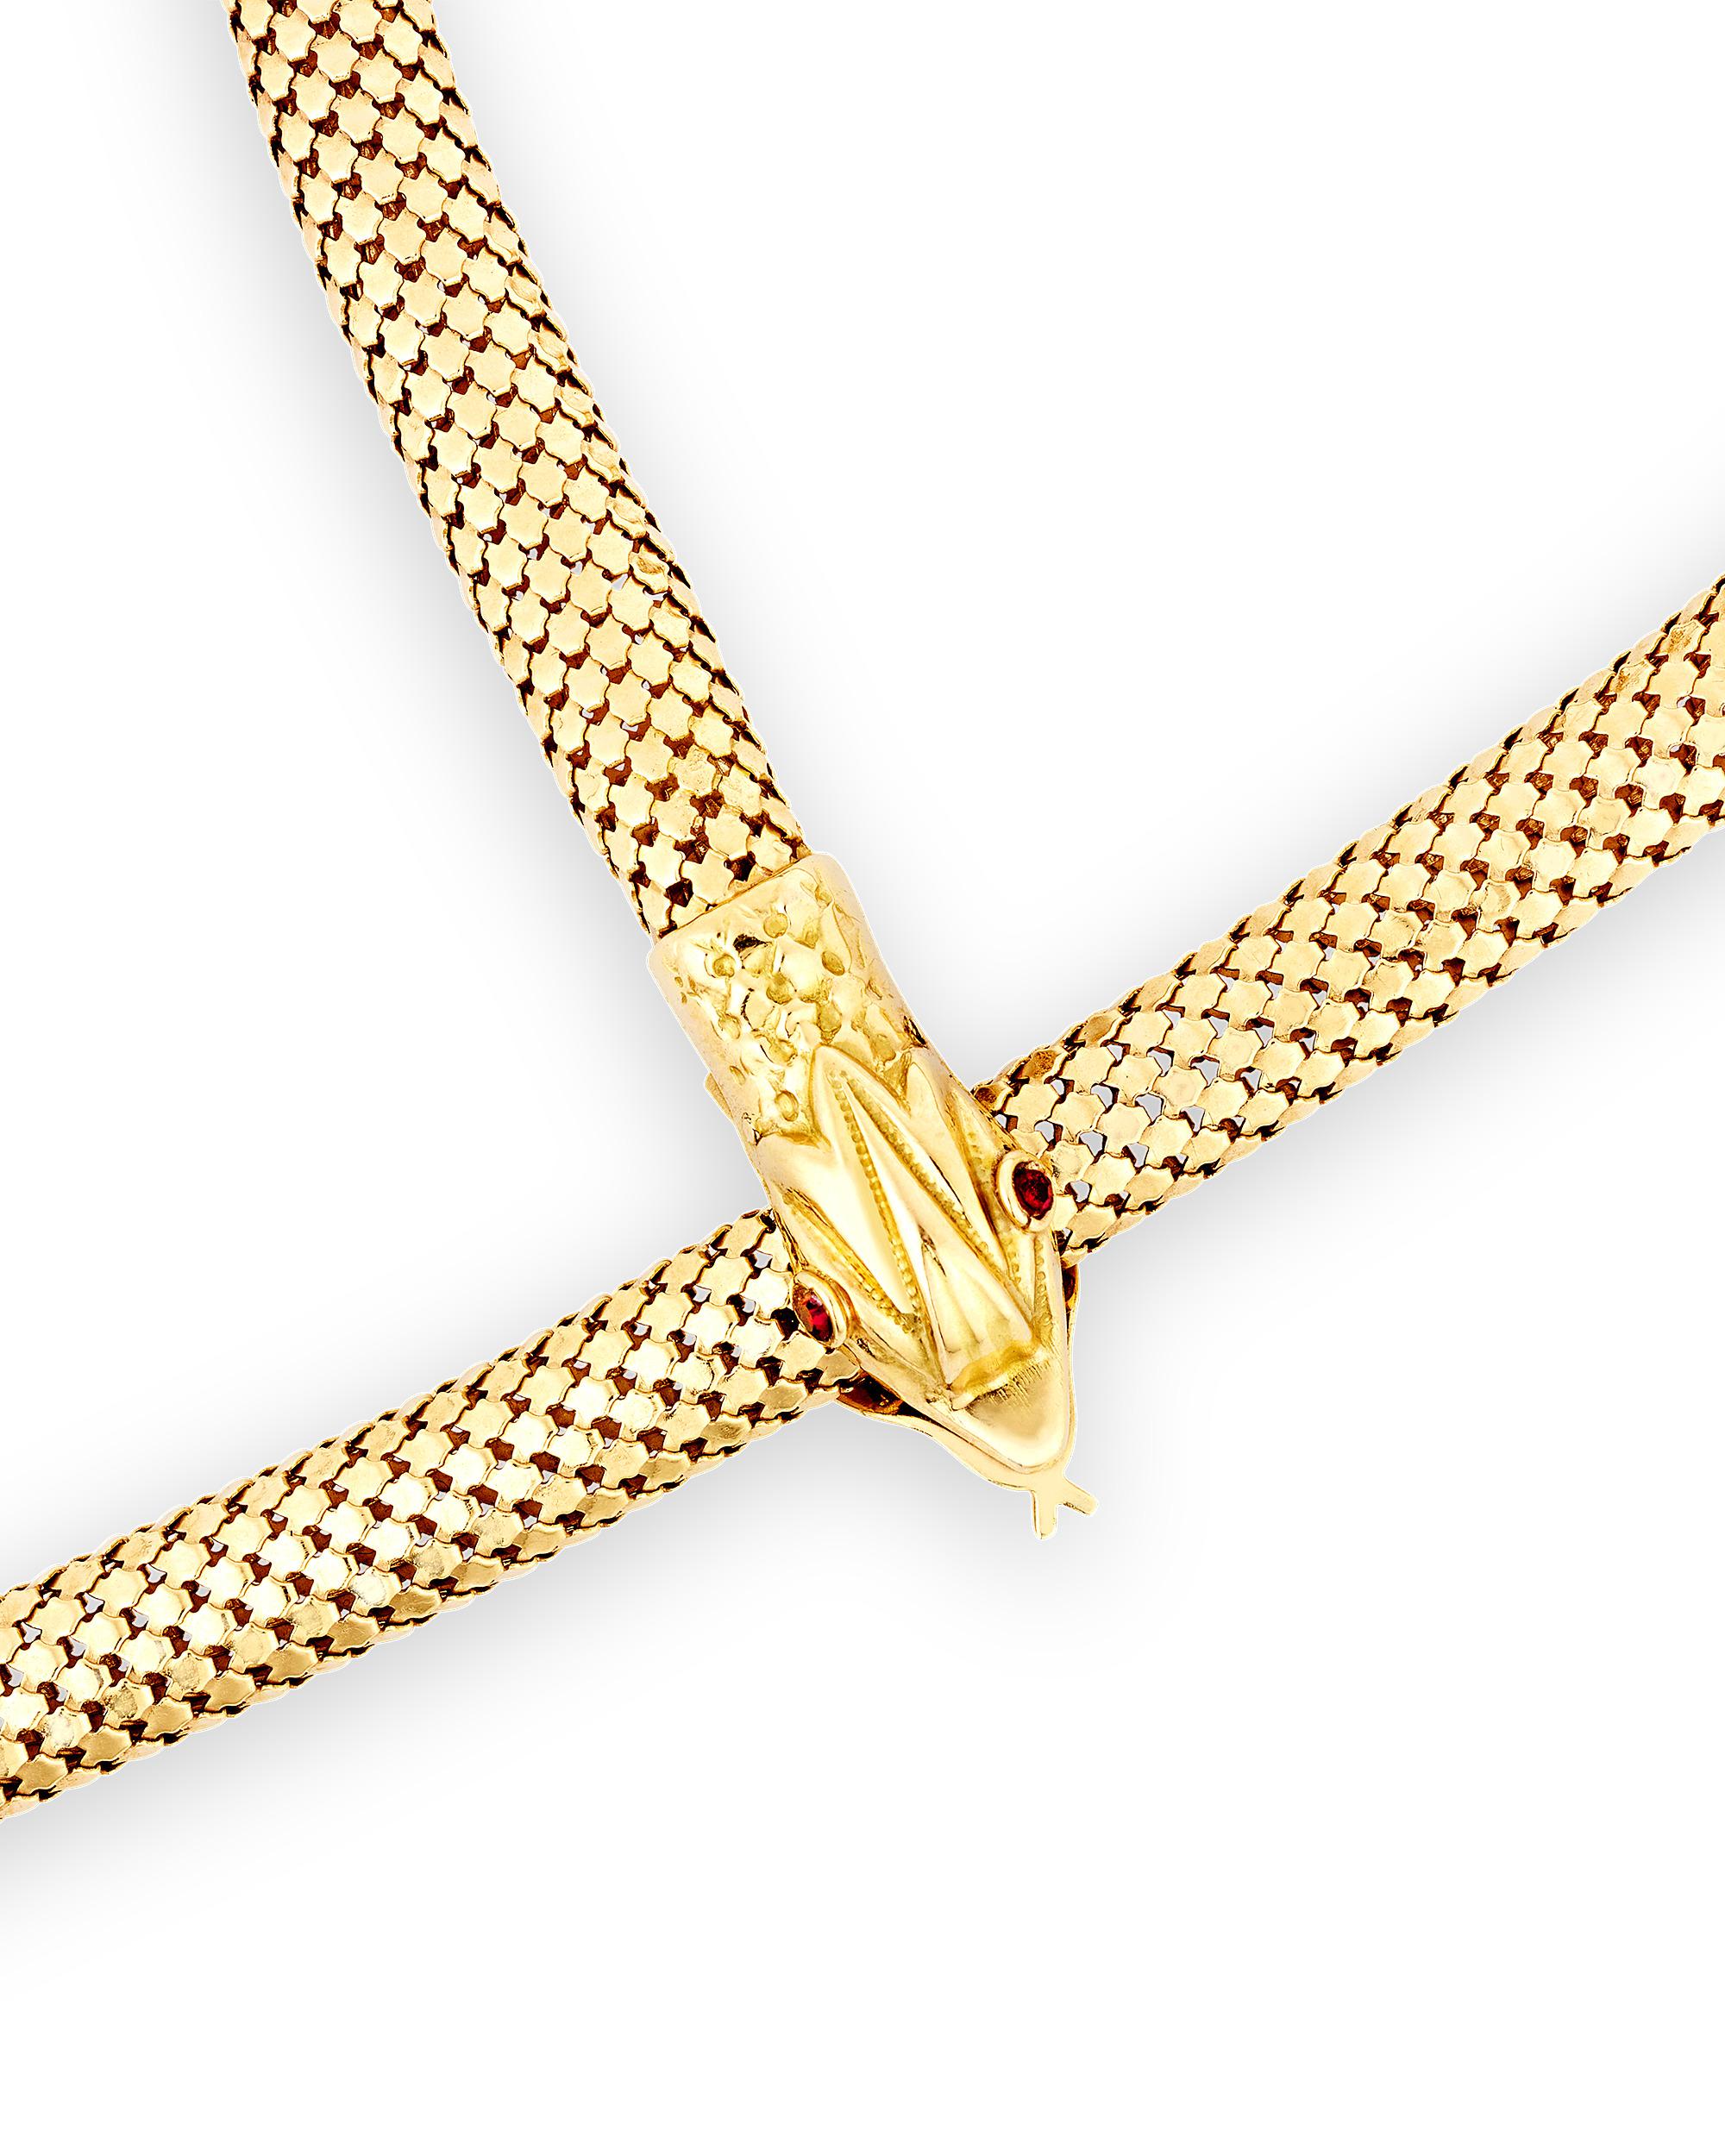 Elegant et unique, ce collier sophistiqué en or 18 carats prend la forme d'un serpent. Le collier lustré est composé d'un magnifique cordon d'or orné de détails en forme d'écailles et d'une tête et d'une queue de serpent. La tête du serpent est